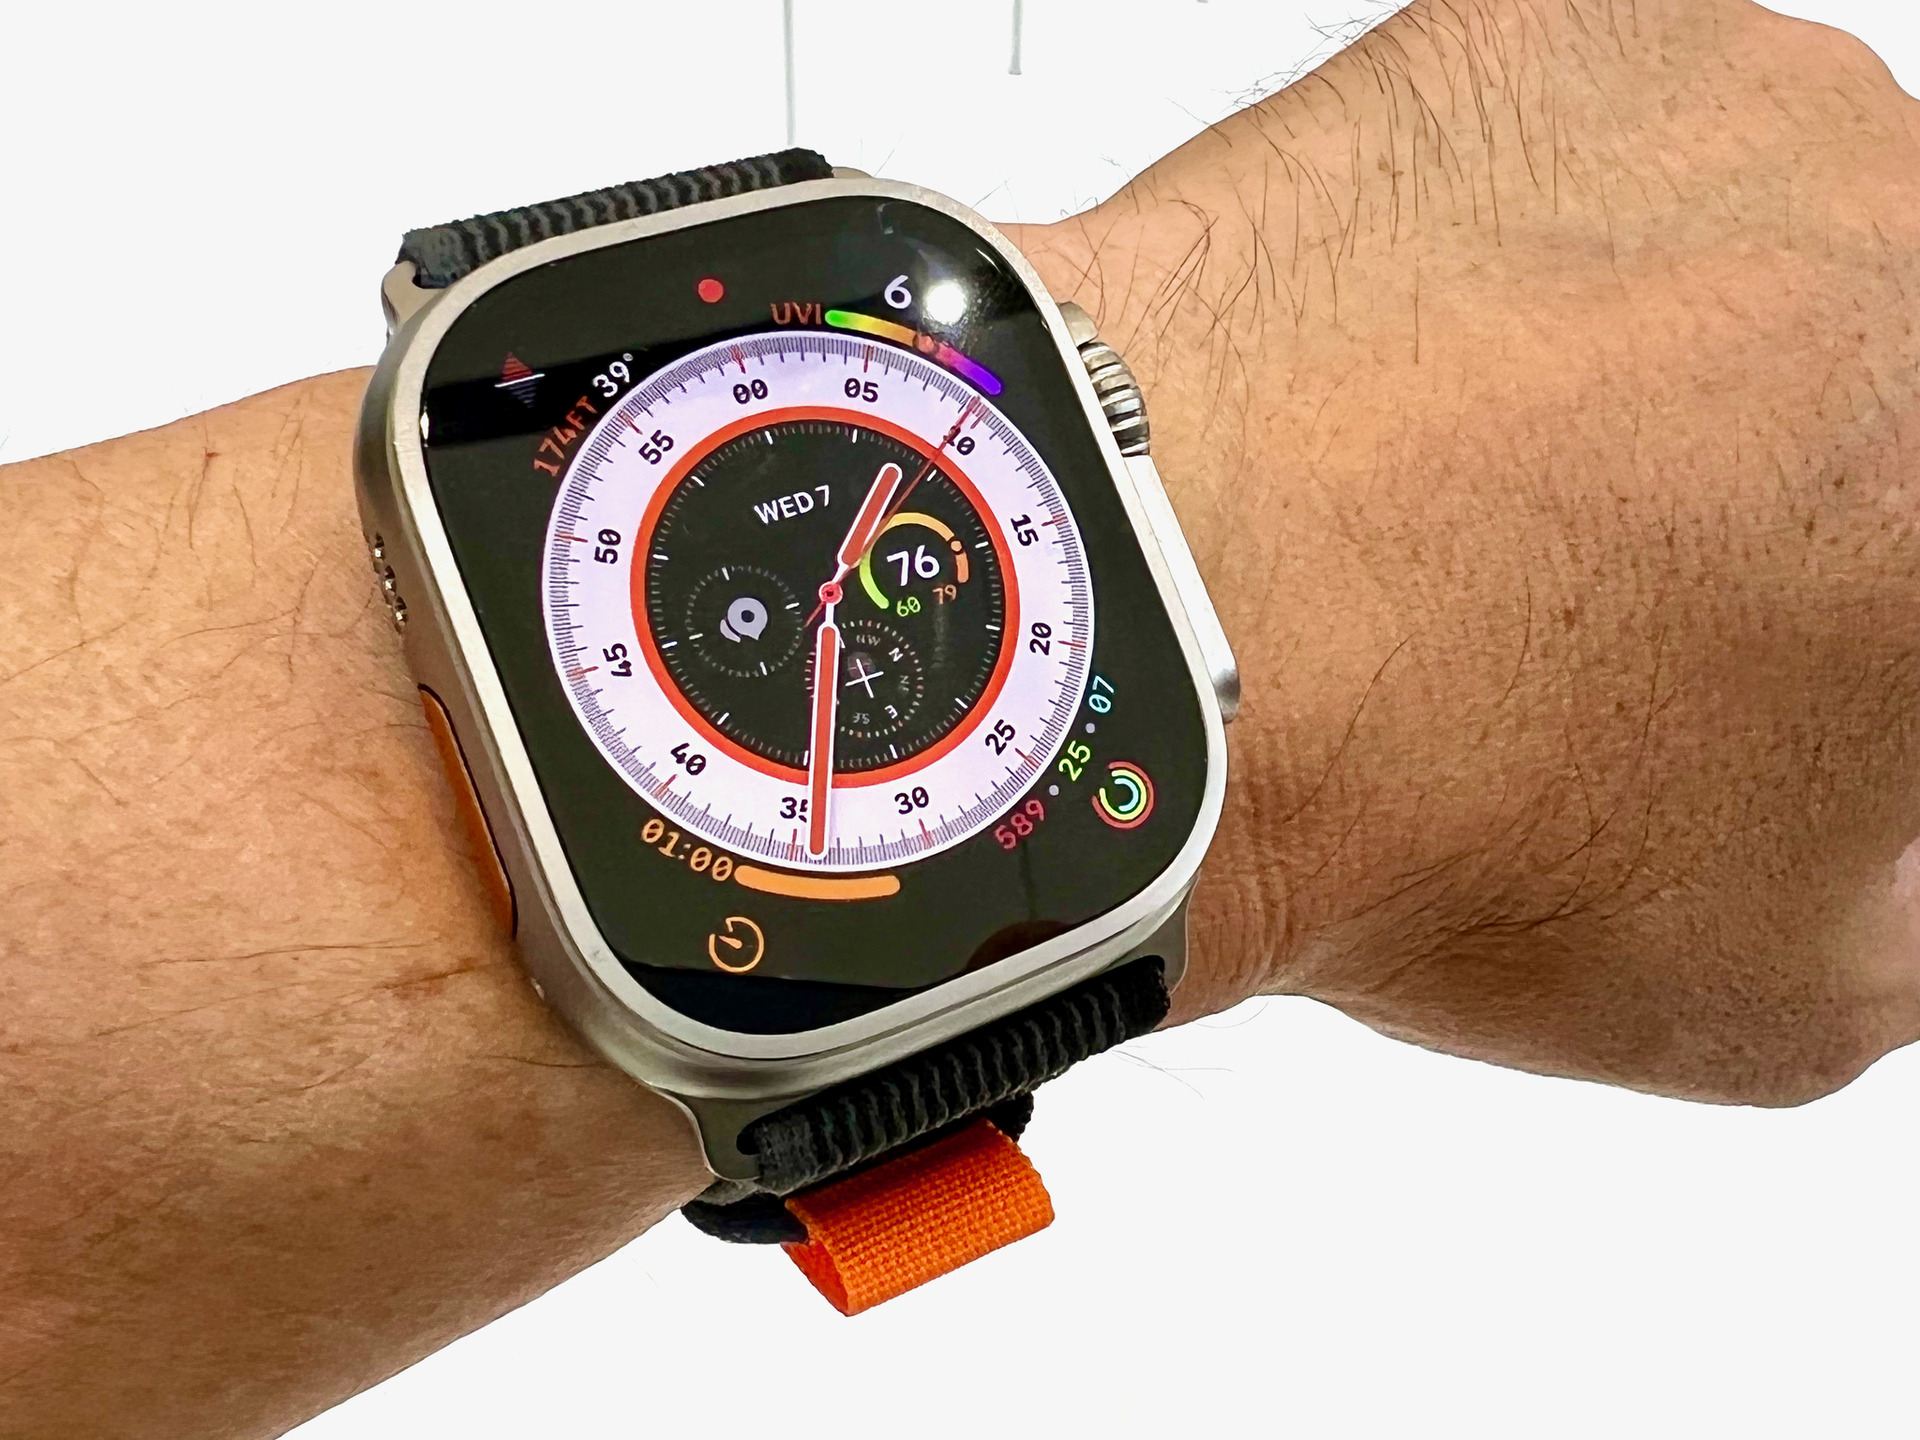 Apple Watch Ultraブラック/グレイトレイルループ